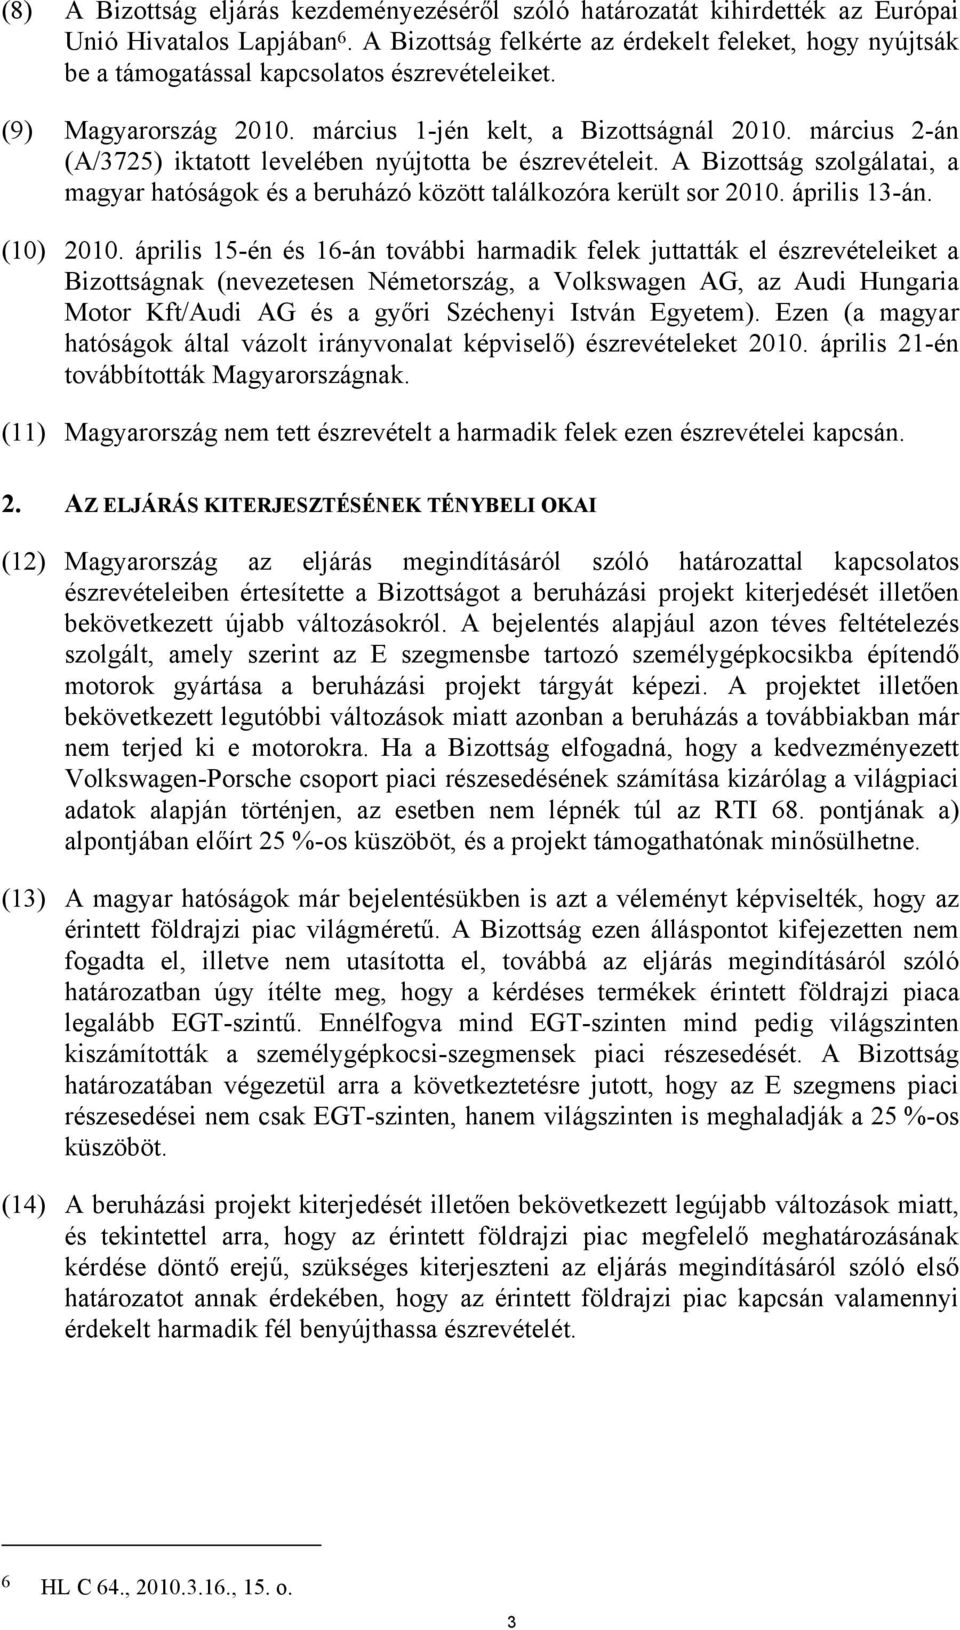 március 2-án (A/3725) iktatott levelében nyújtotta be észrevételeit. A Bizottság szolgálatai, a magyar hatóságok és a beruházó között találkozóra került sor 2010. április 13-án. (10) 2010.